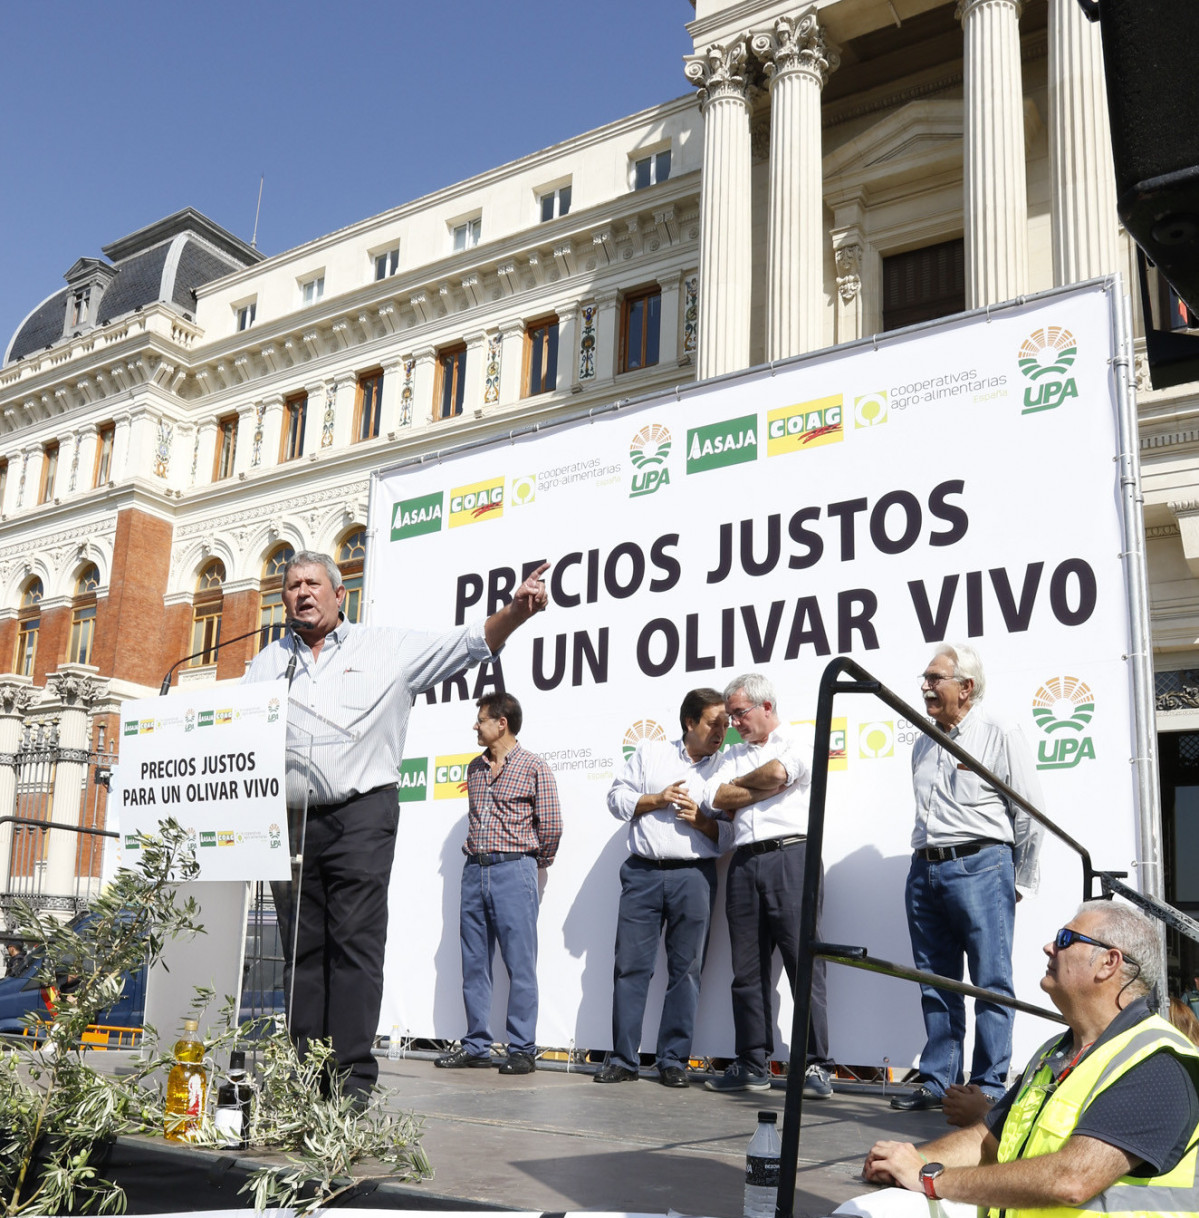 Manifestación olivar 3 Madrid oct 2019 (Foto Prensa UPA)